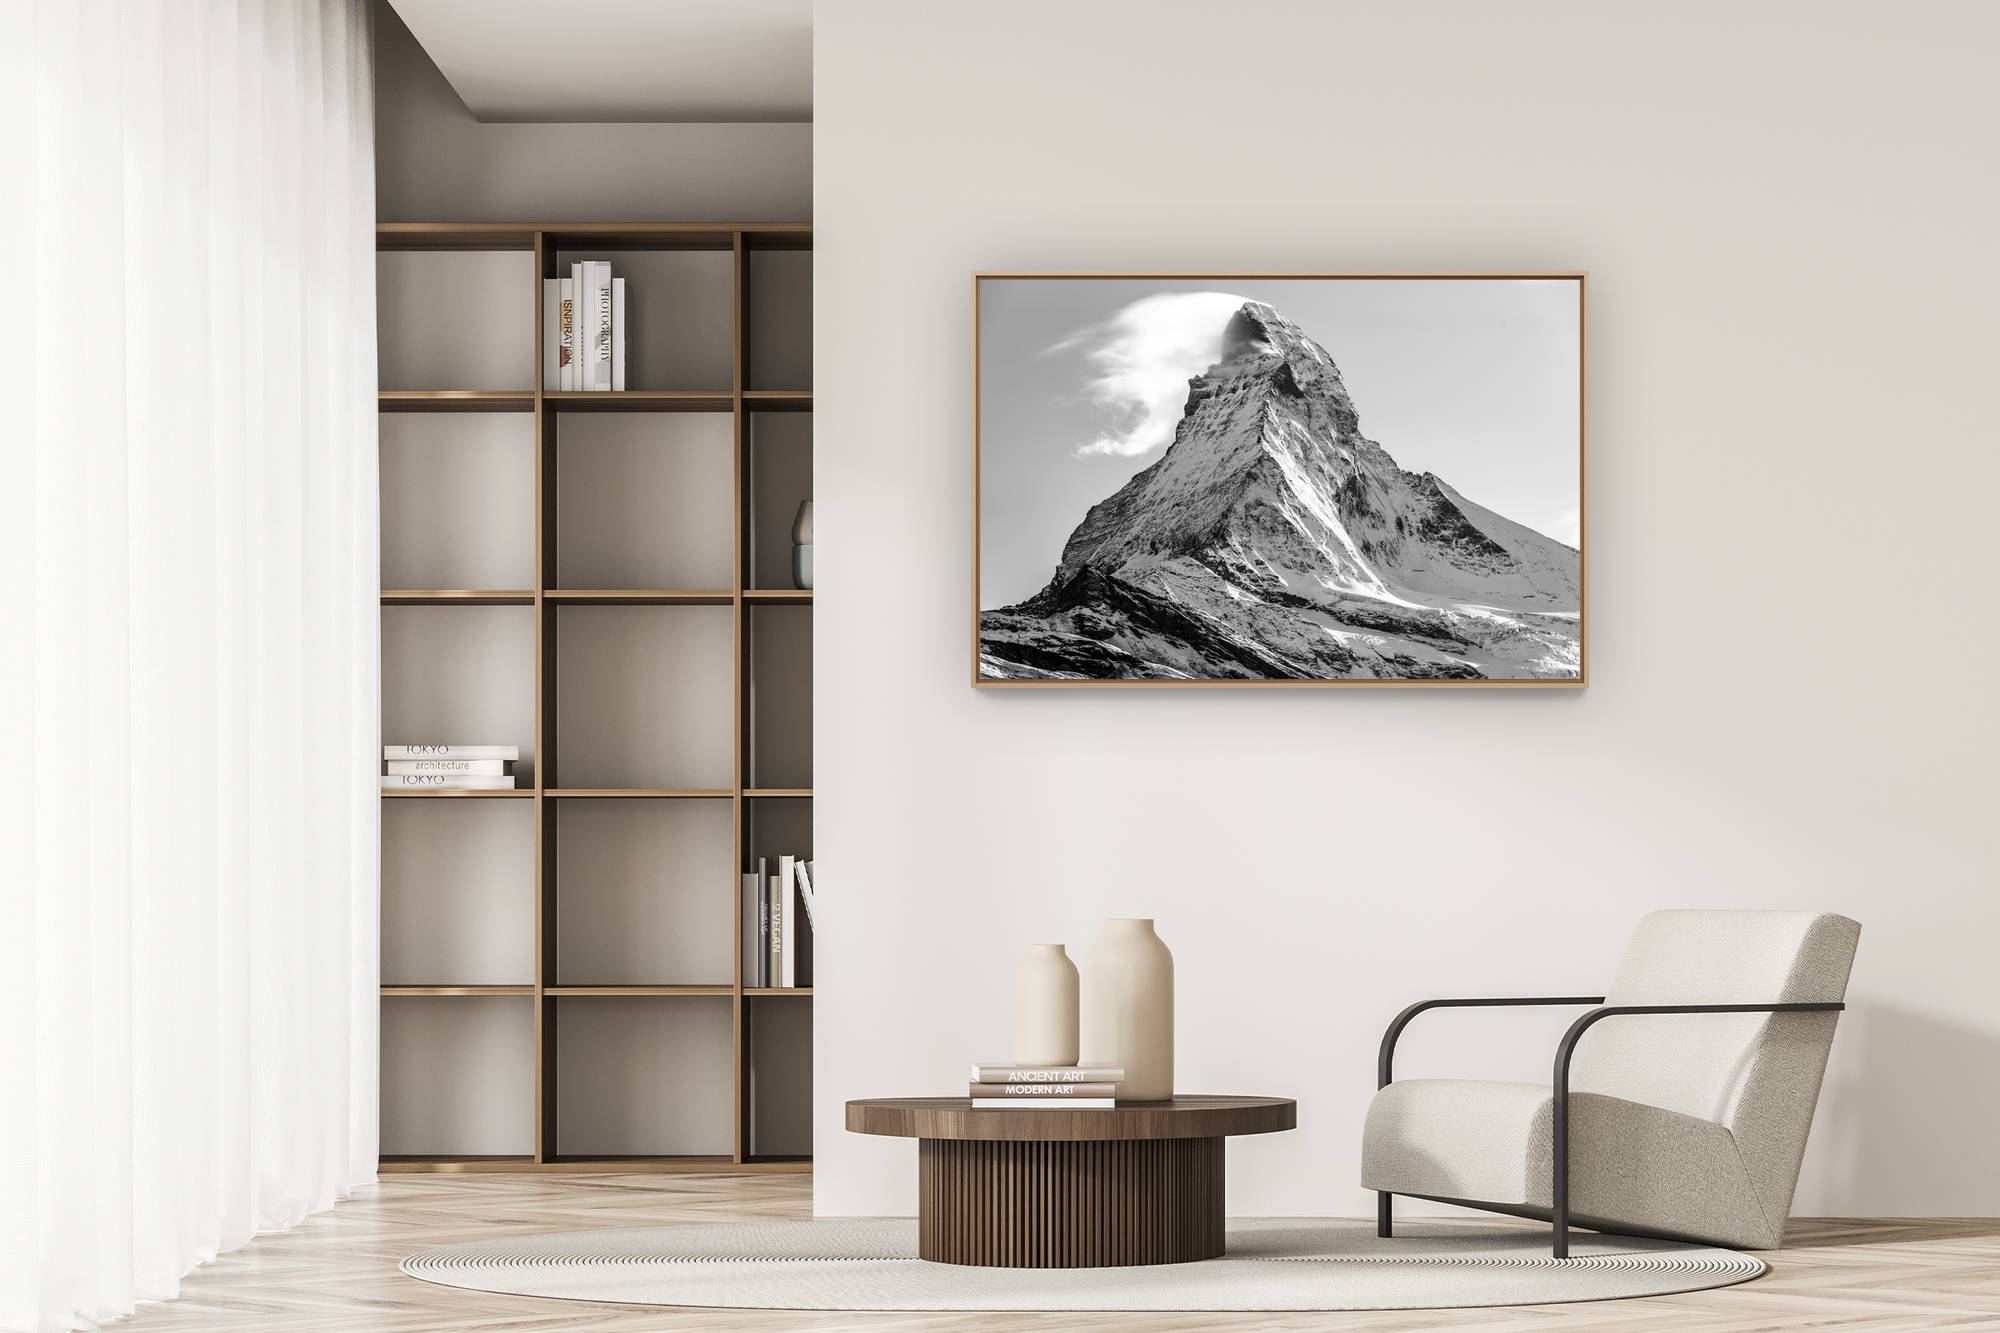 Photo of the Matterhorn